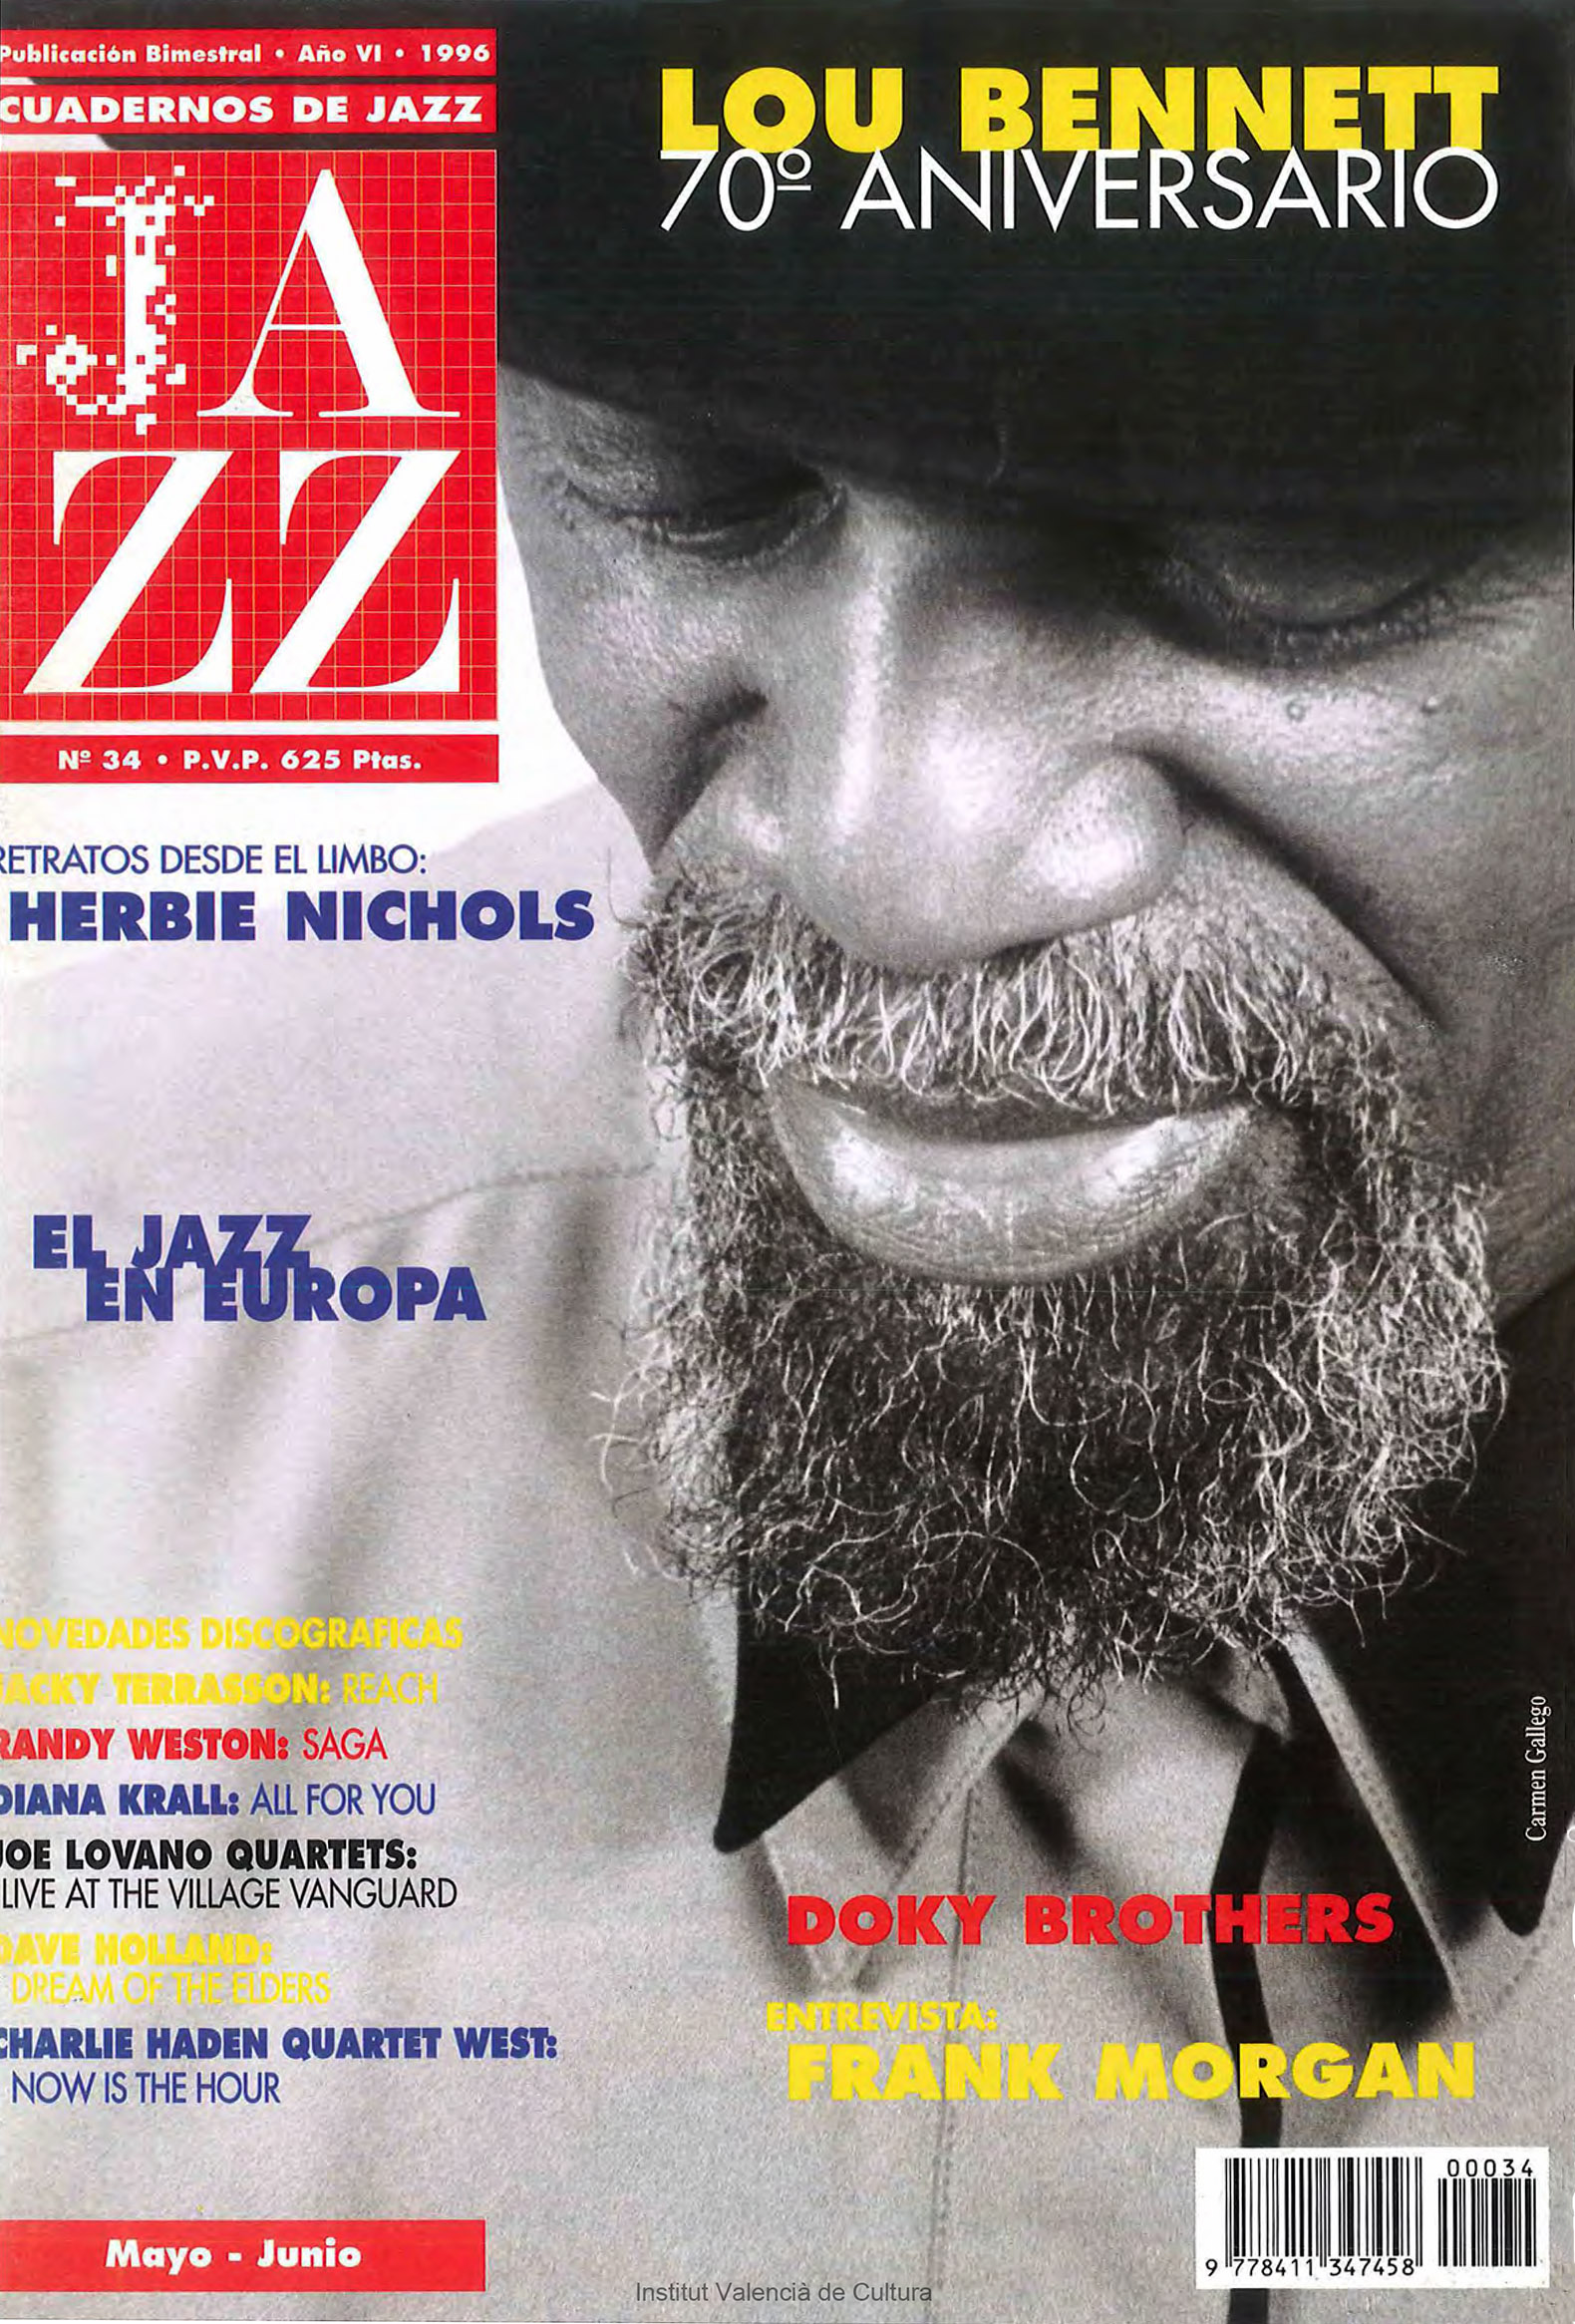 Cubierta del número 34 de la revista Cuadernos de Jazz